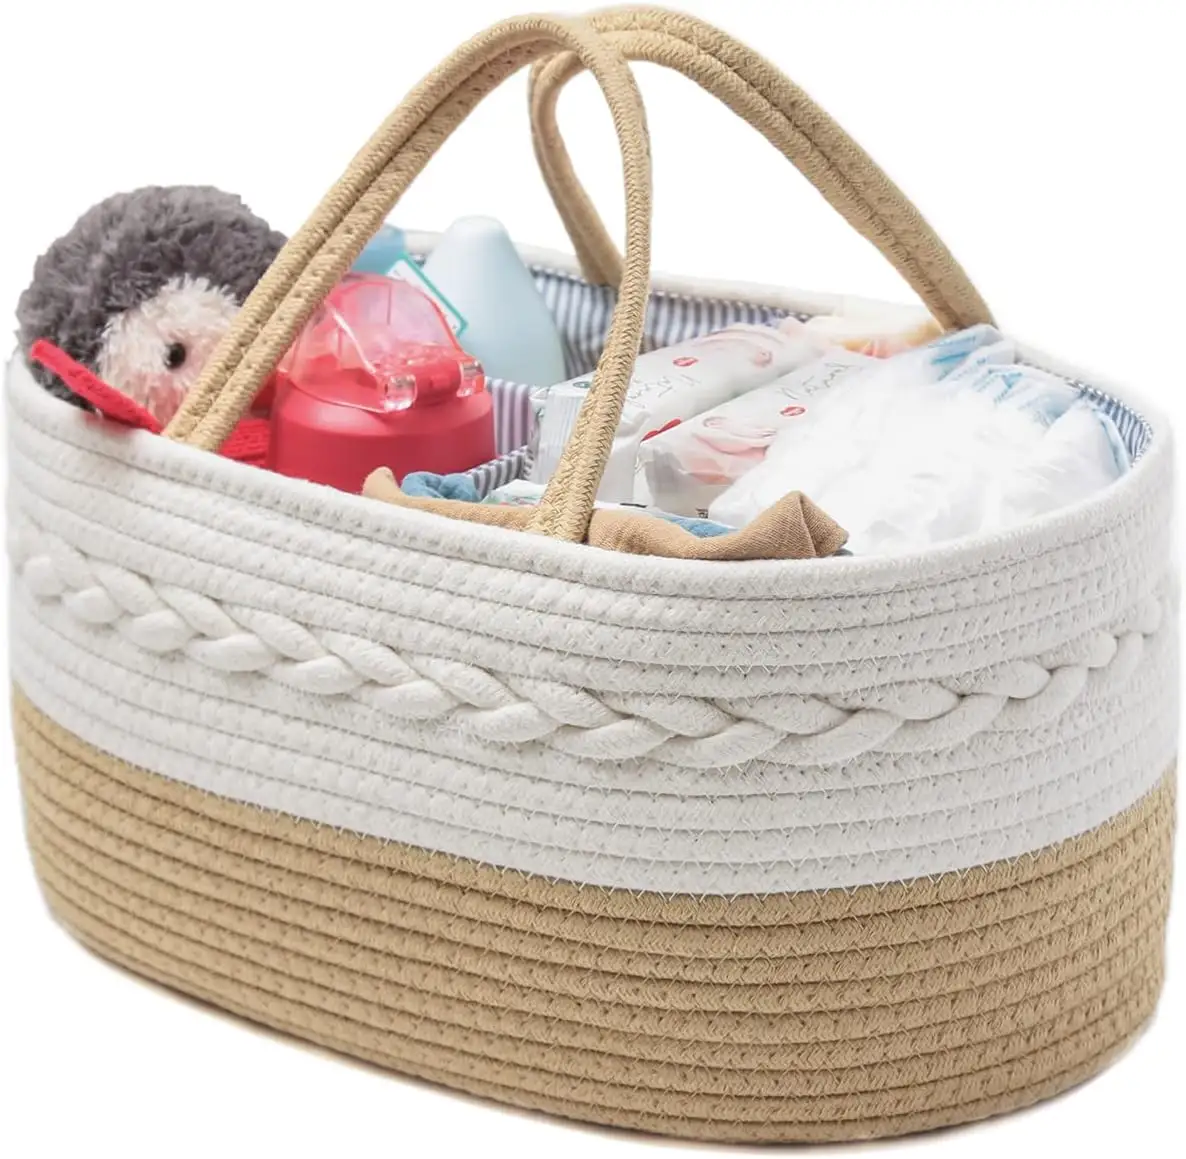 Rope Woven Nursery Storage Basket com divisor ajustável, Baby Diaper Caddy Organizer, Portable Car Travel Fraldas Organizer